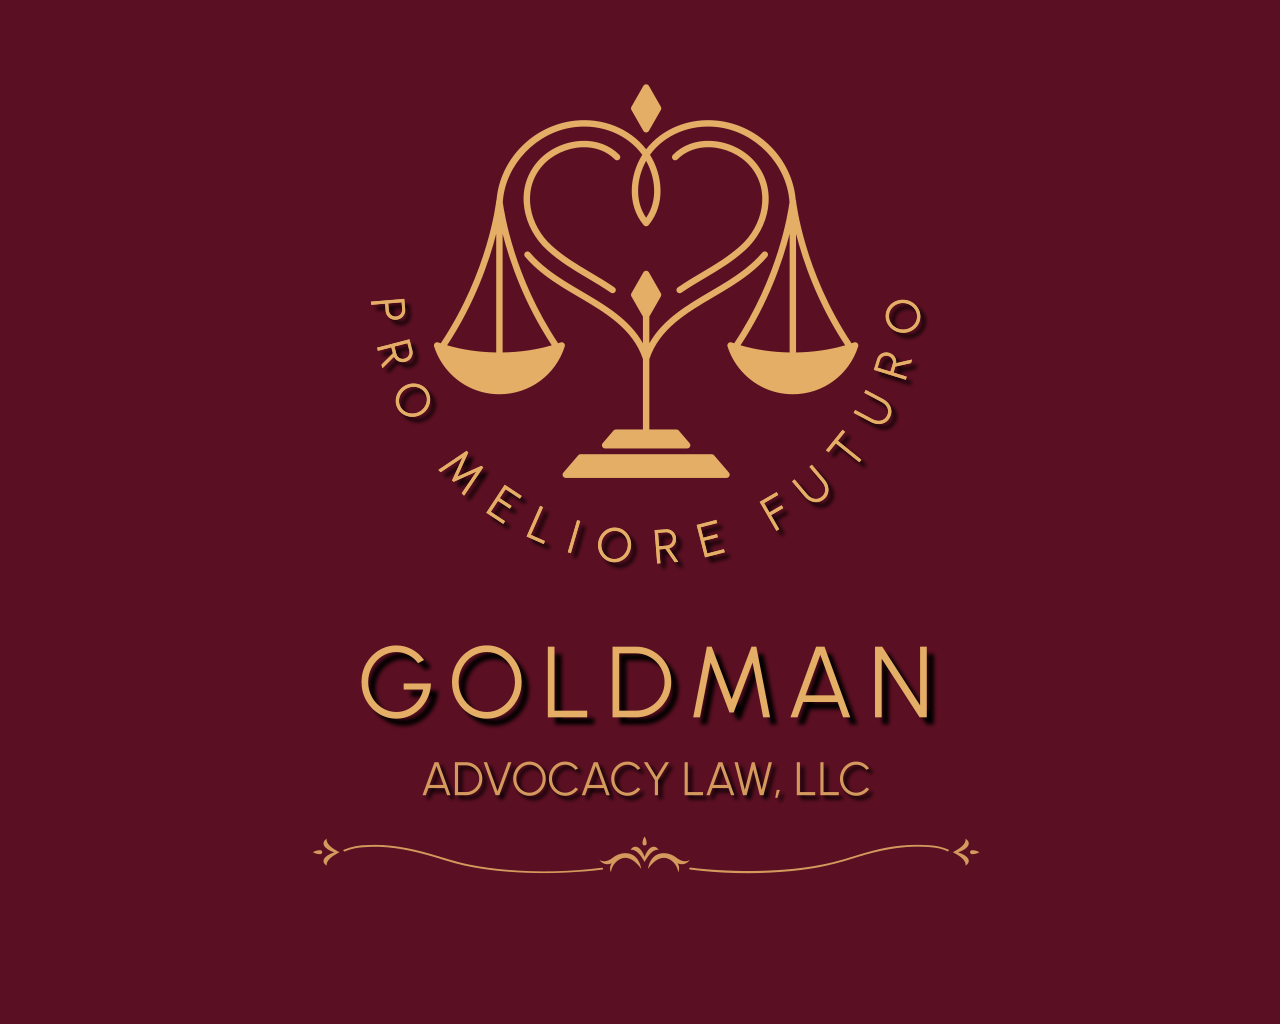 Goldman Advocacy Law